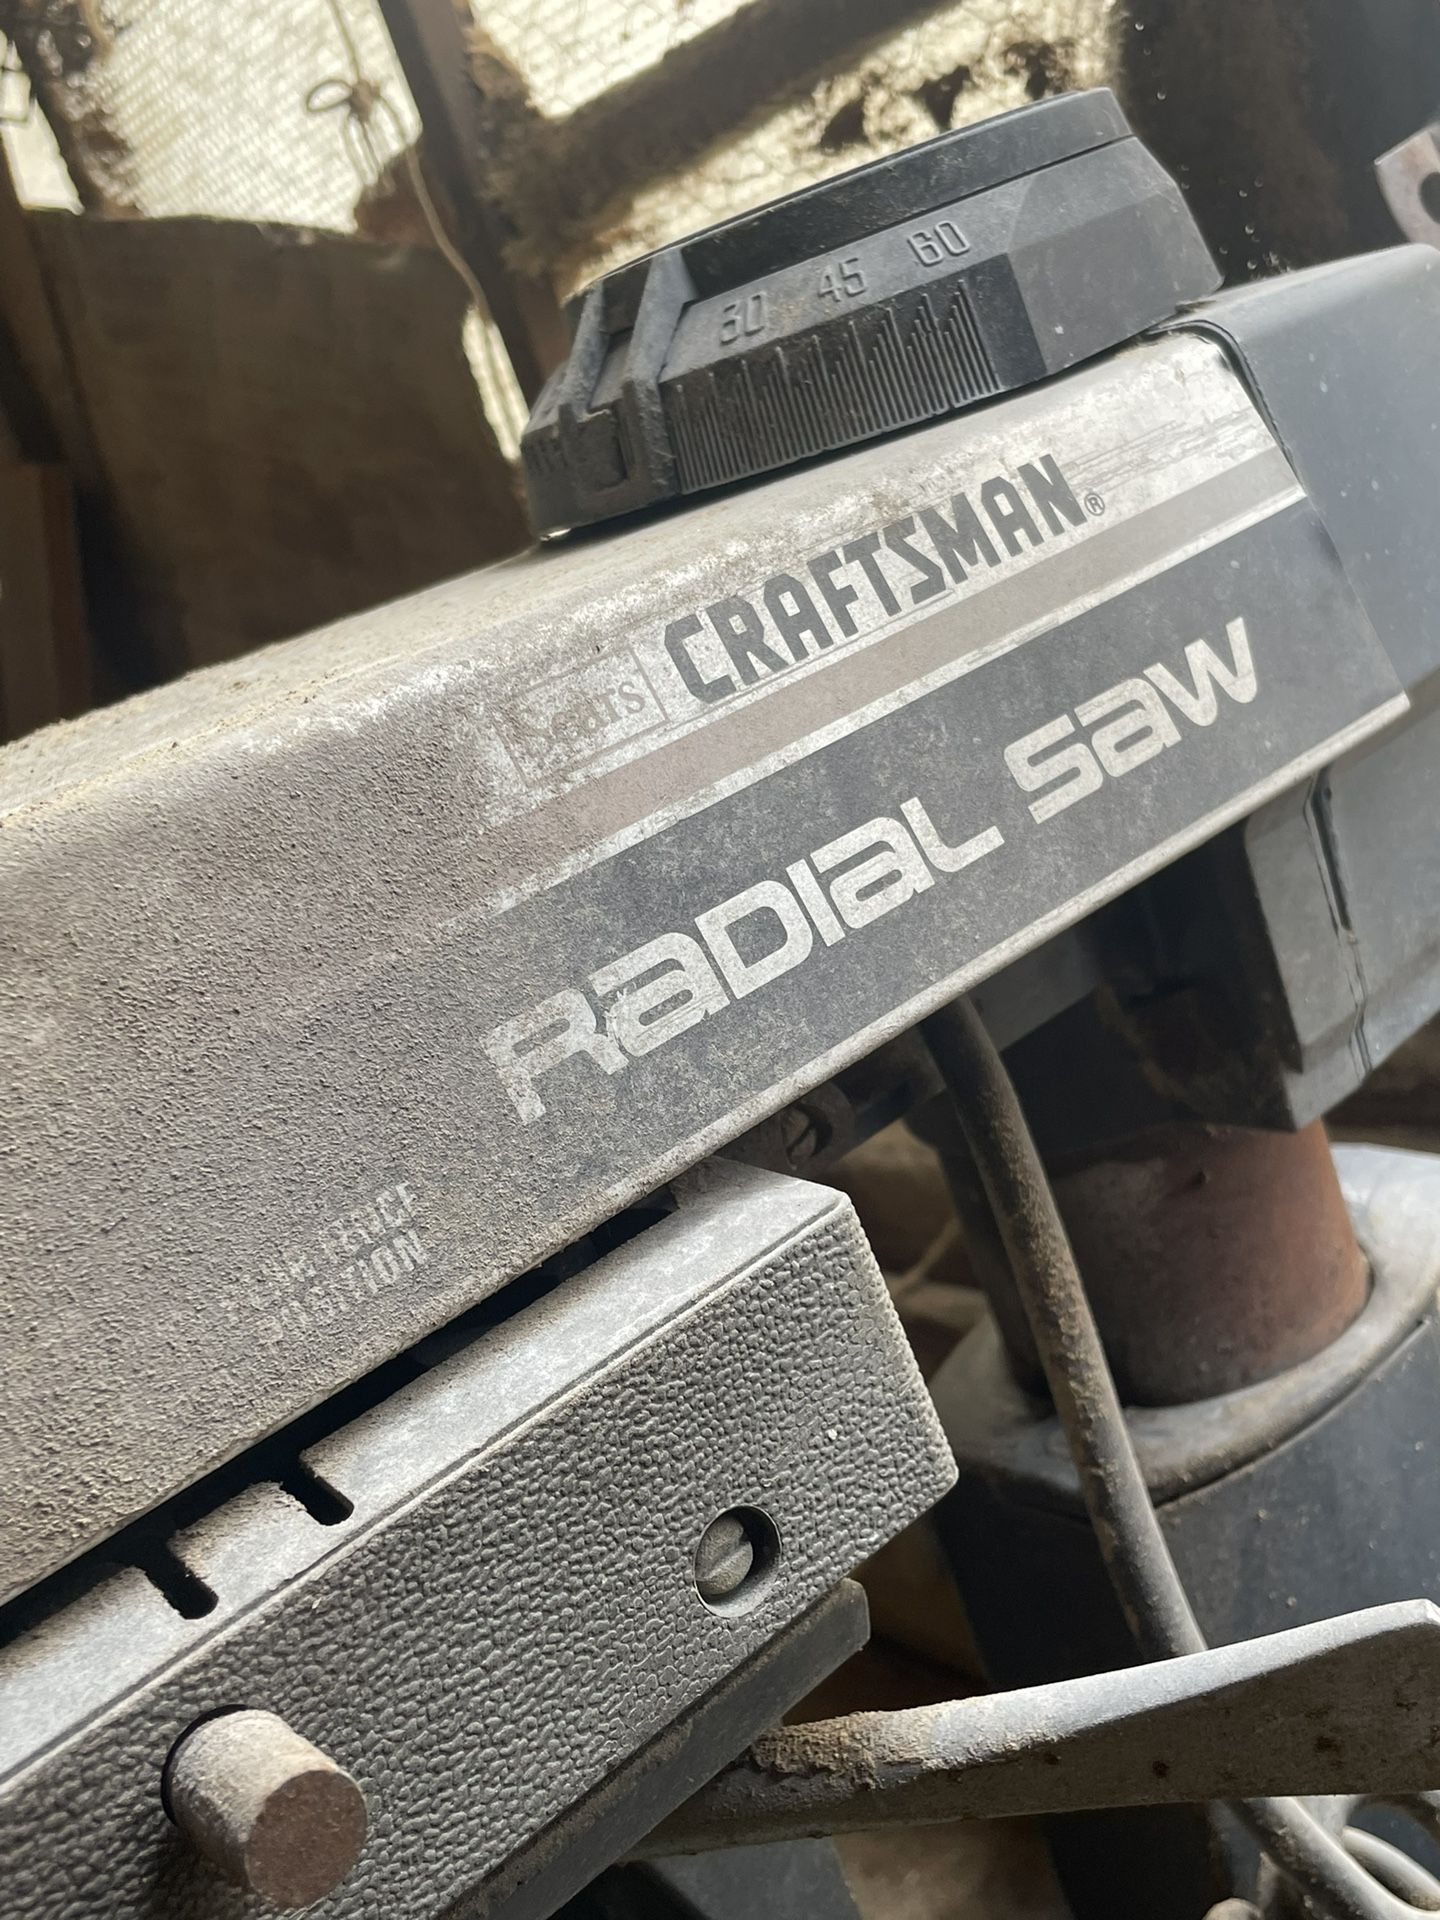 Radial Saw (aka-Arm Saw)